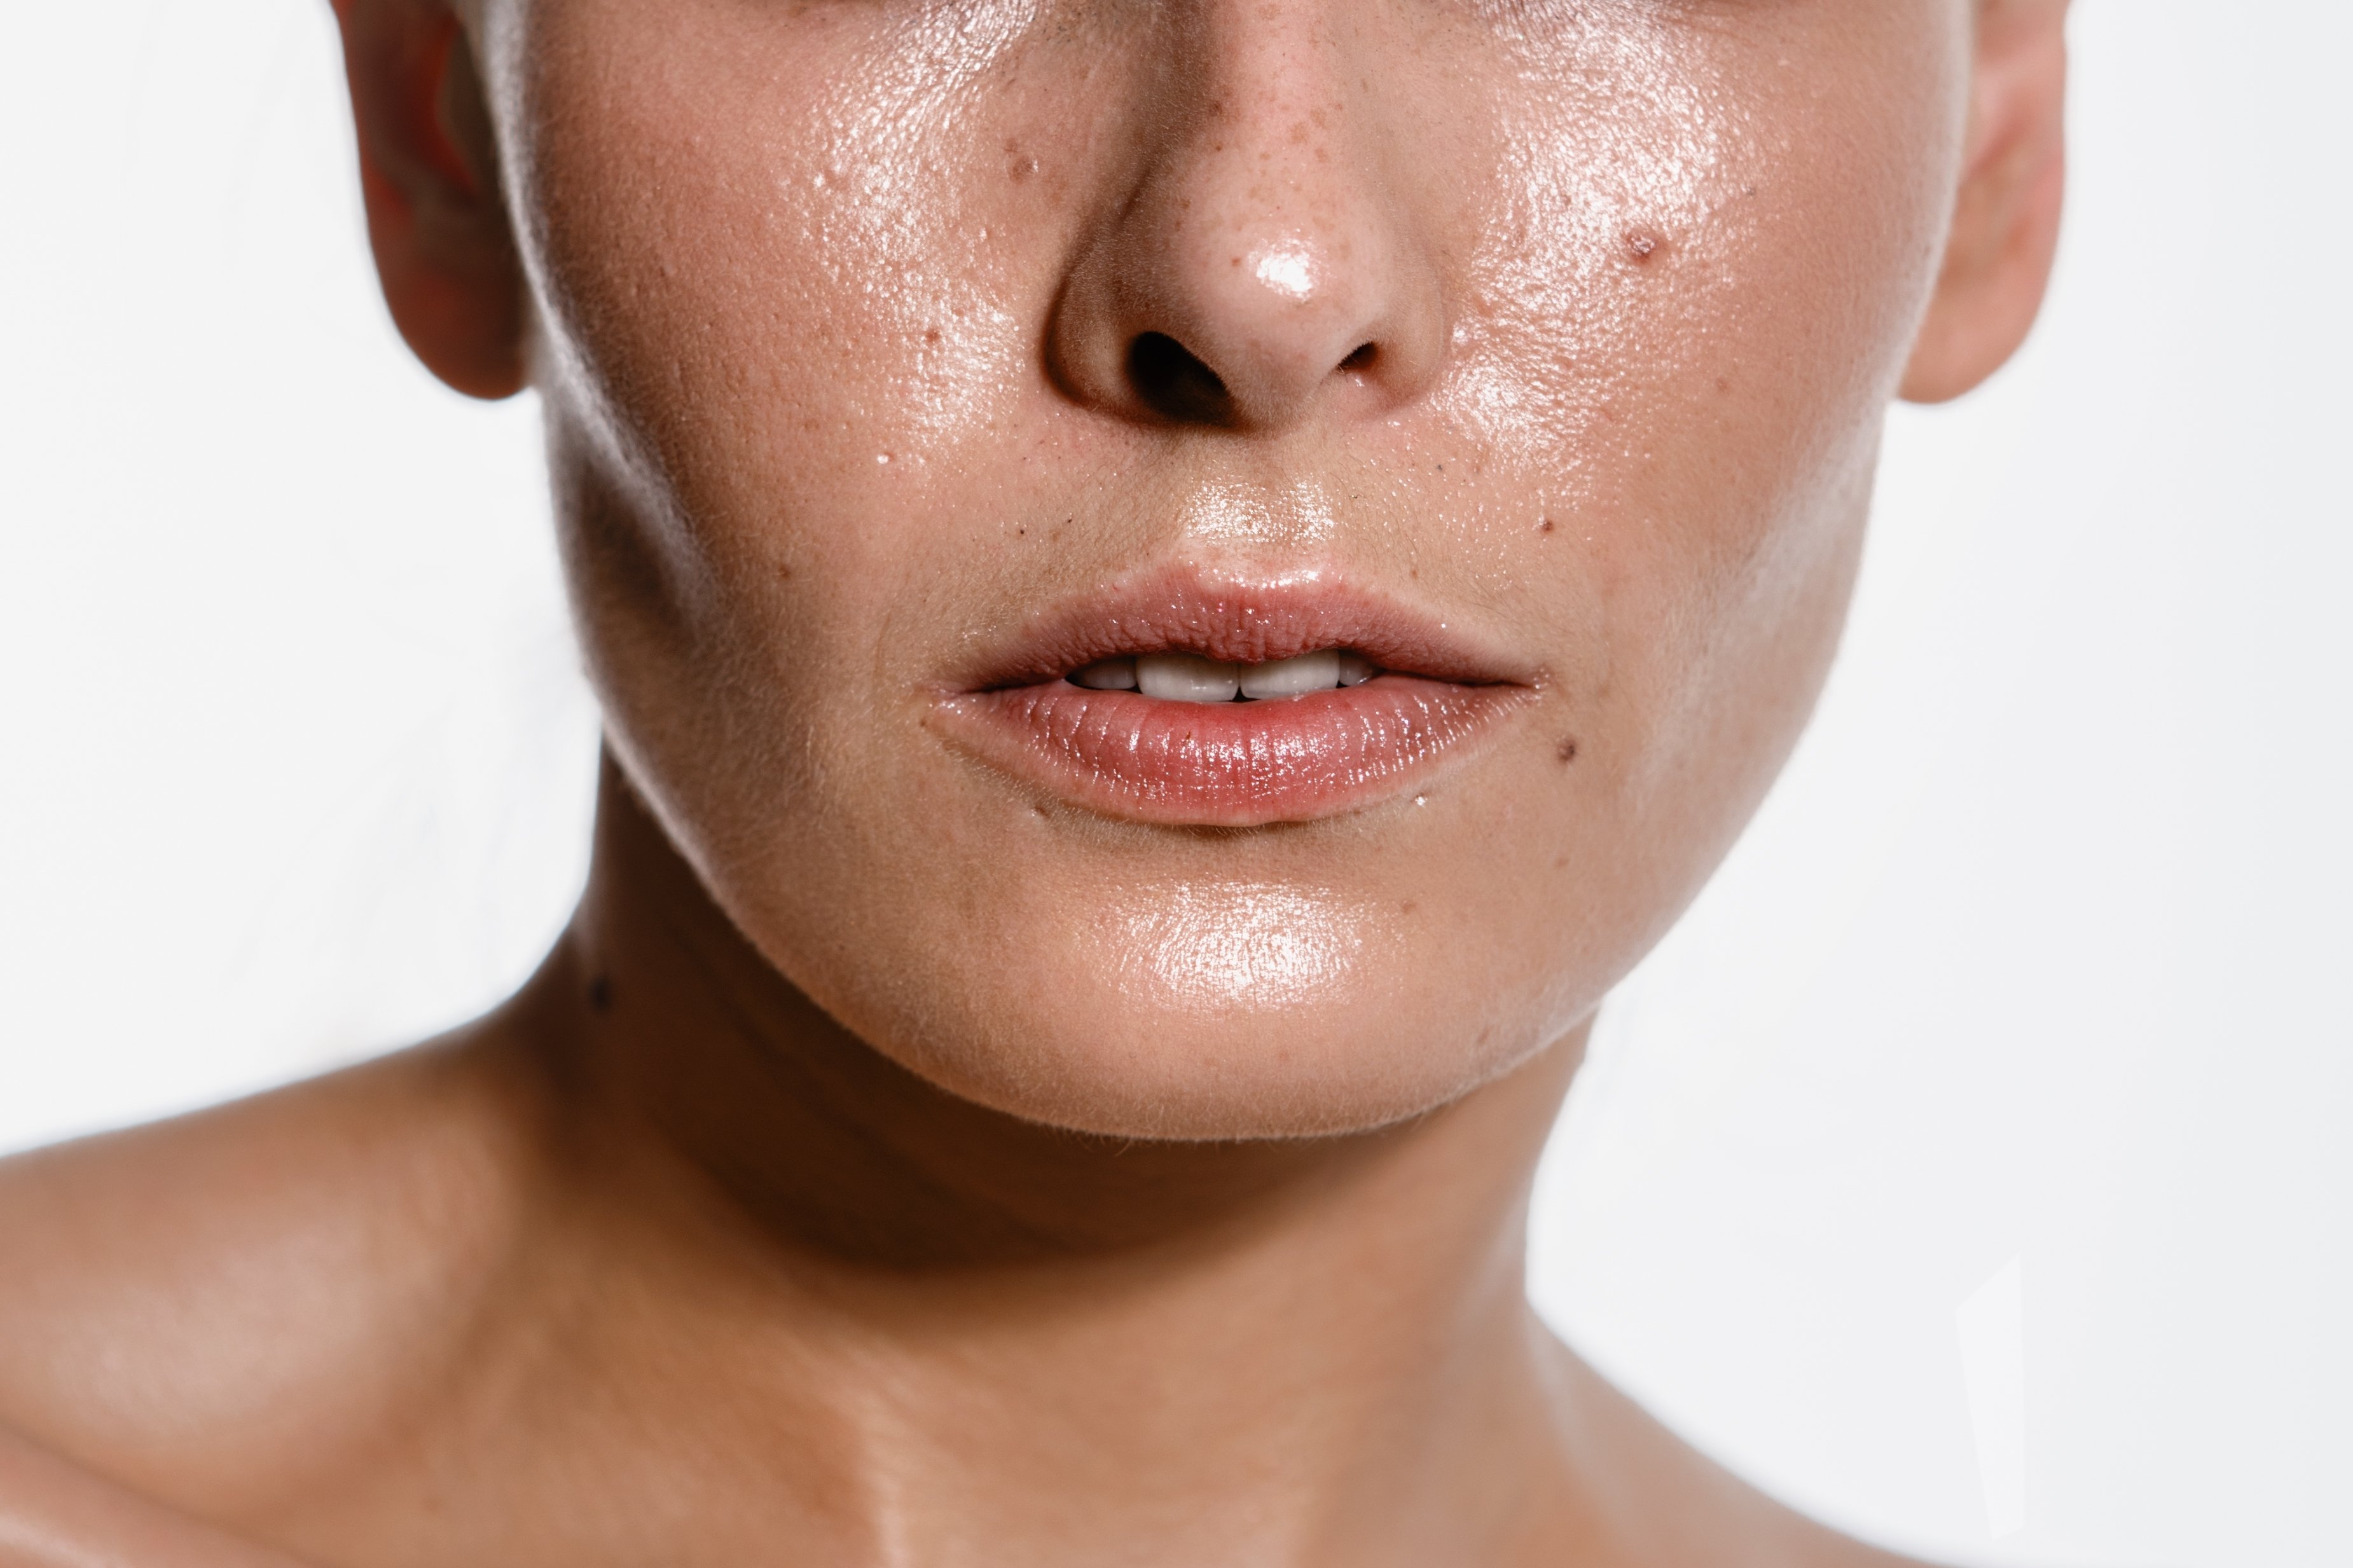 Caracterizada pelo excesso de brilho em razão da oleosidade e dos poros dilatados, a pele oleosa tem uma maior tendência à acne